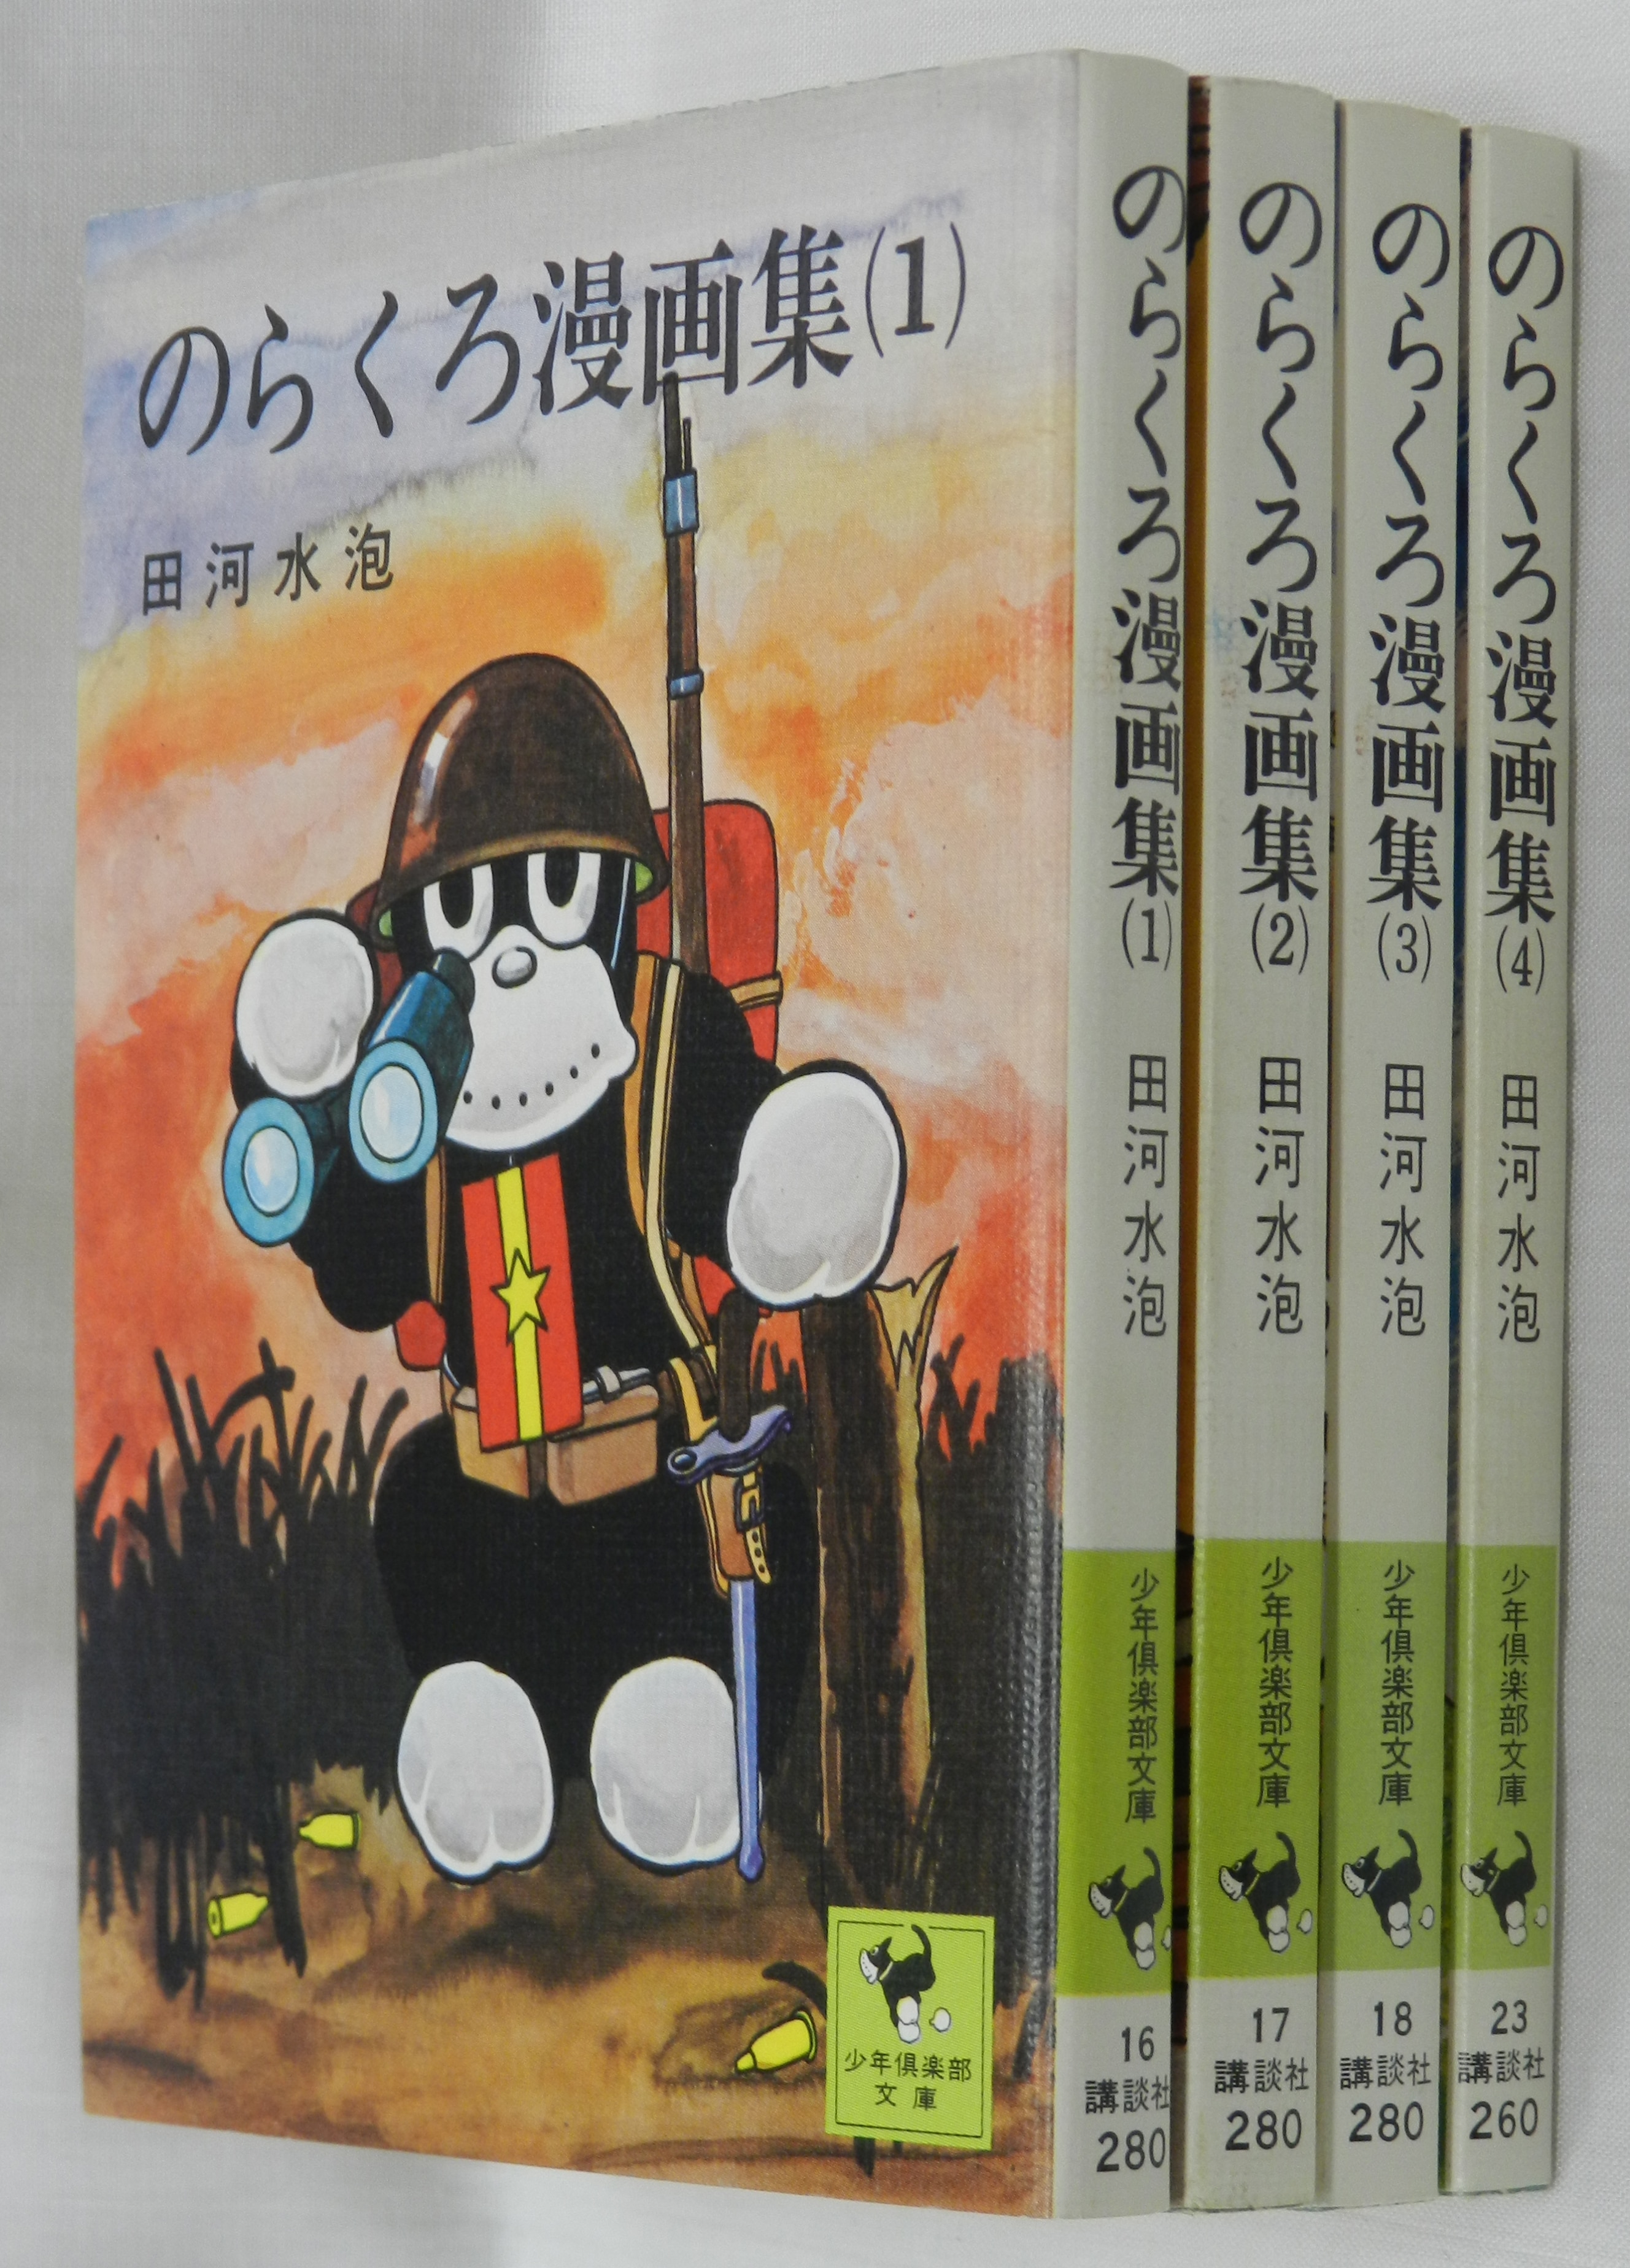 のらくろ漫画集 1〜3巻 田河水泡 - 少年漫画